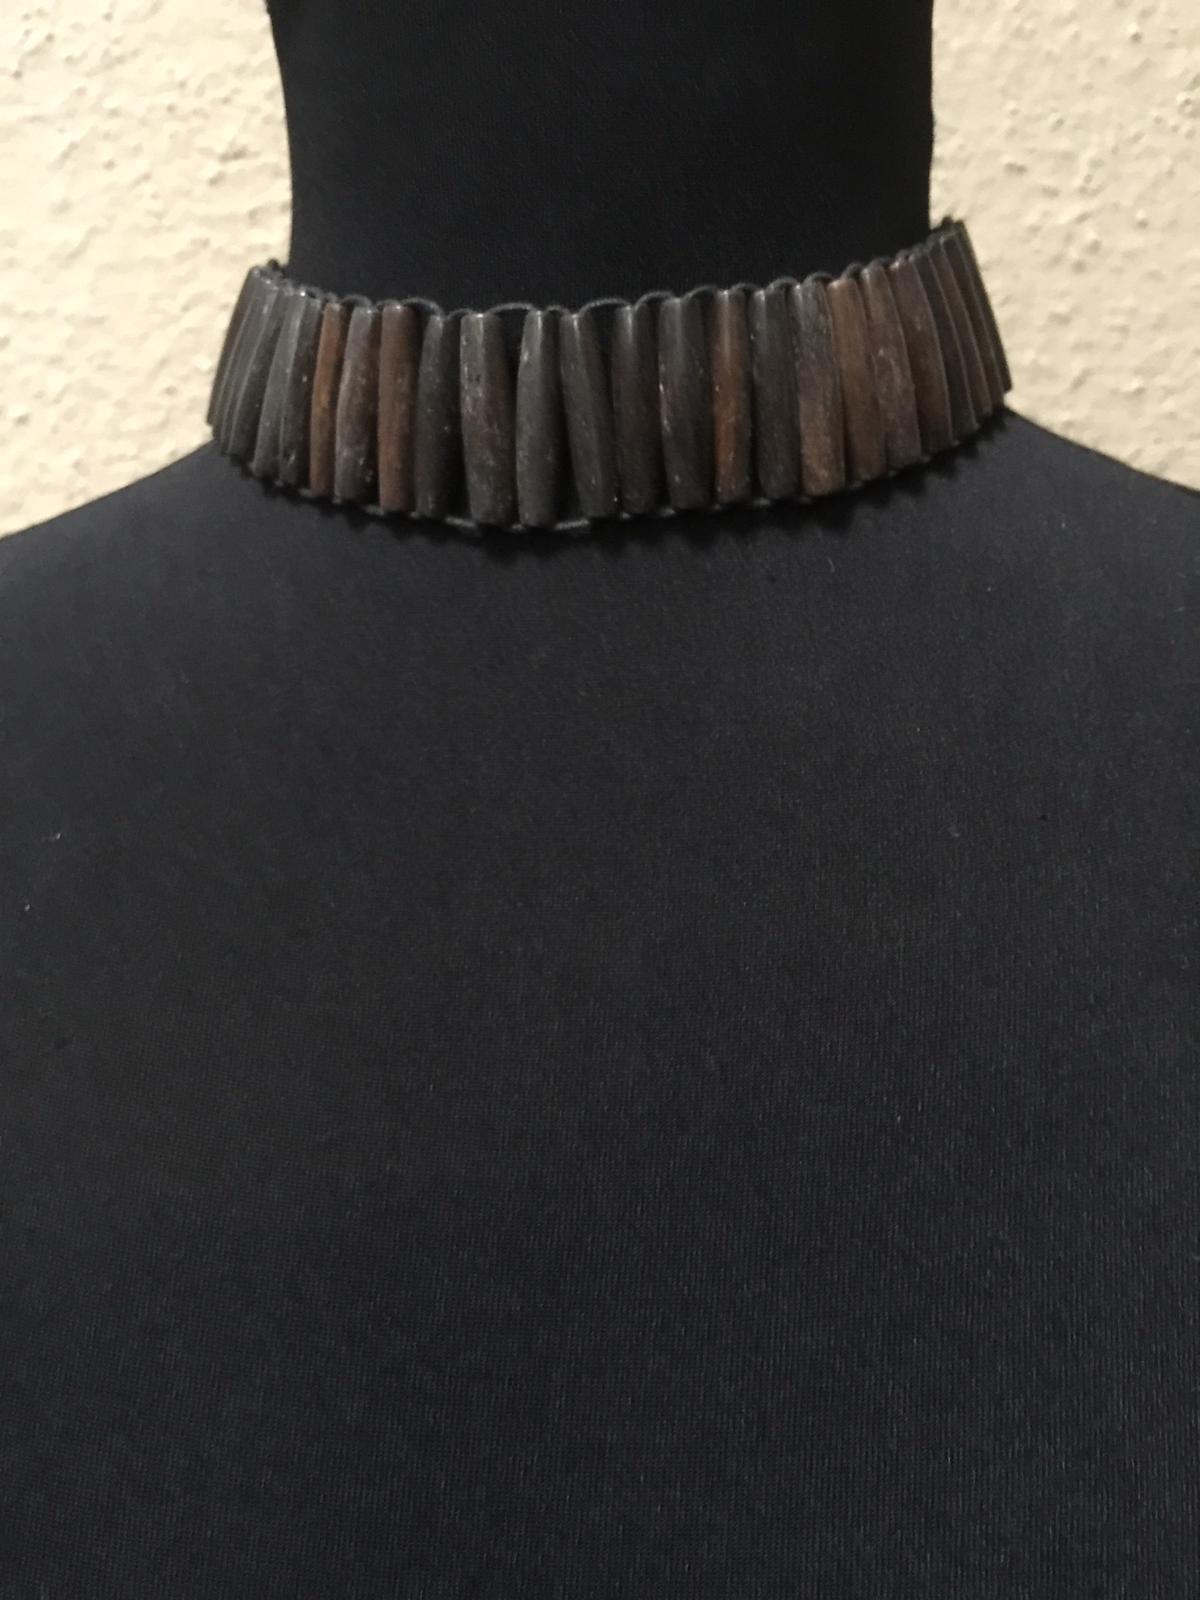 Bamboo Choker Necklace